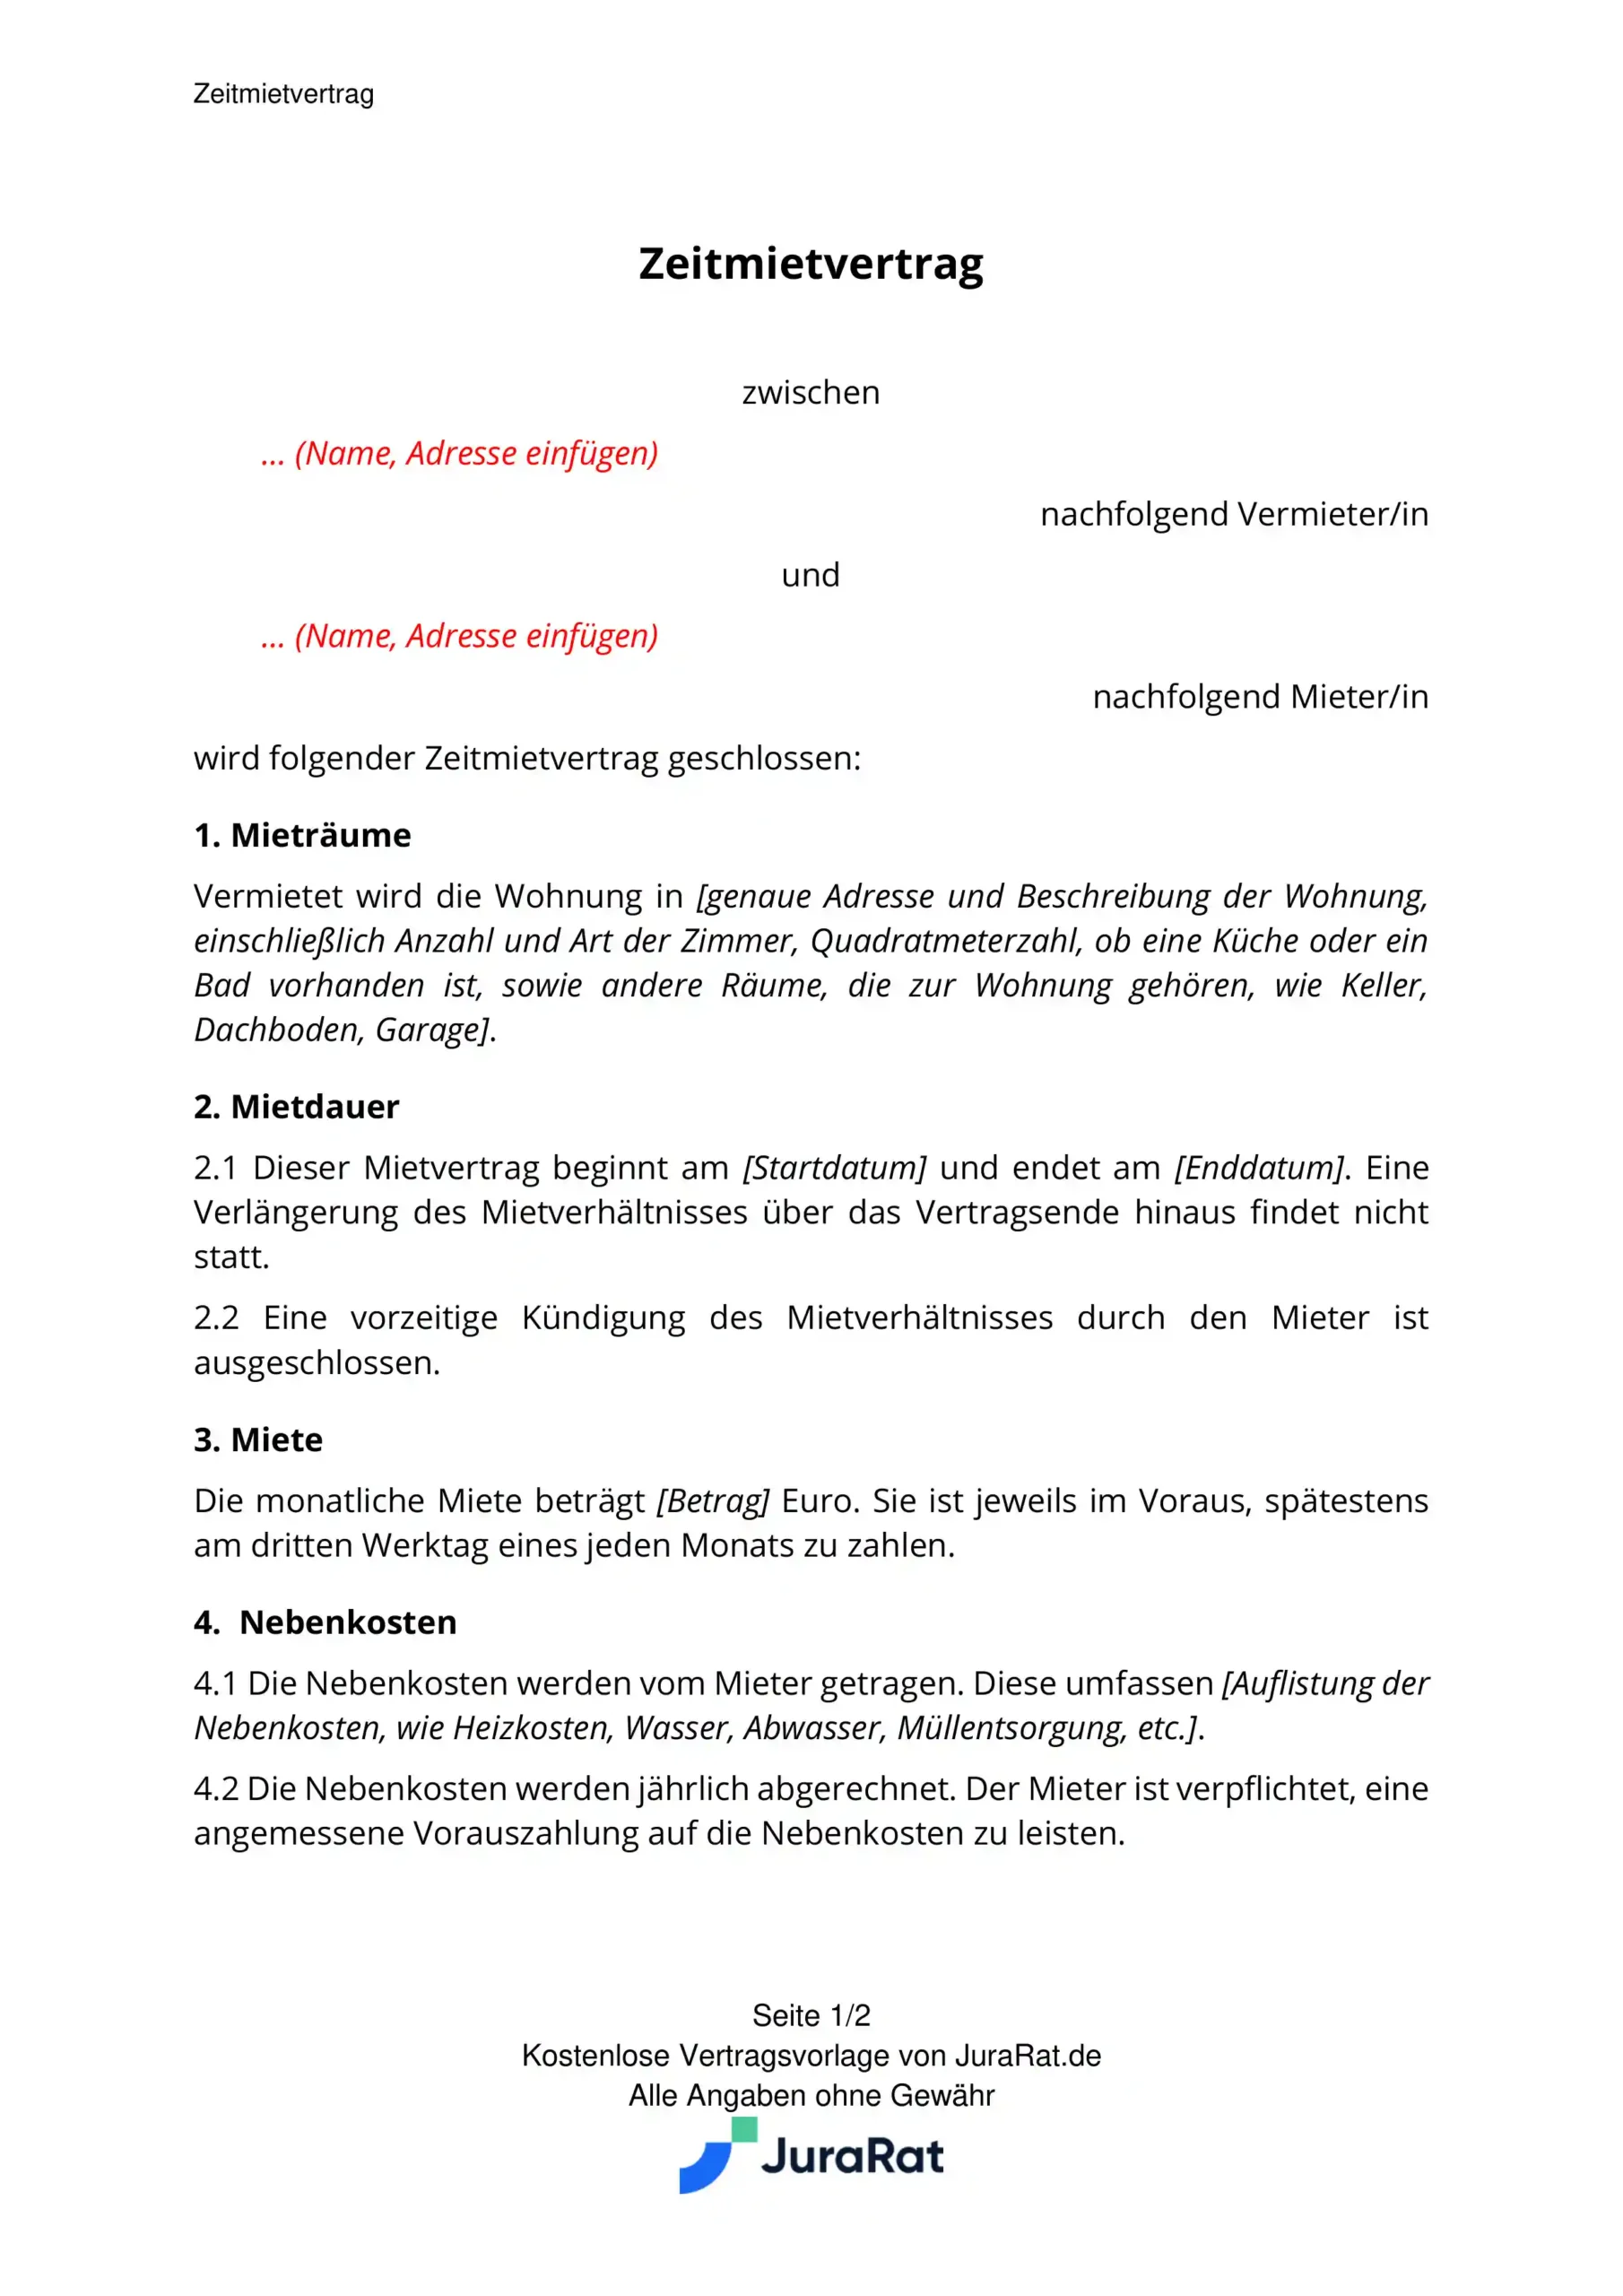 Zeitmietvertrag Muster: Kostenlose Vorlage von JuraRat.